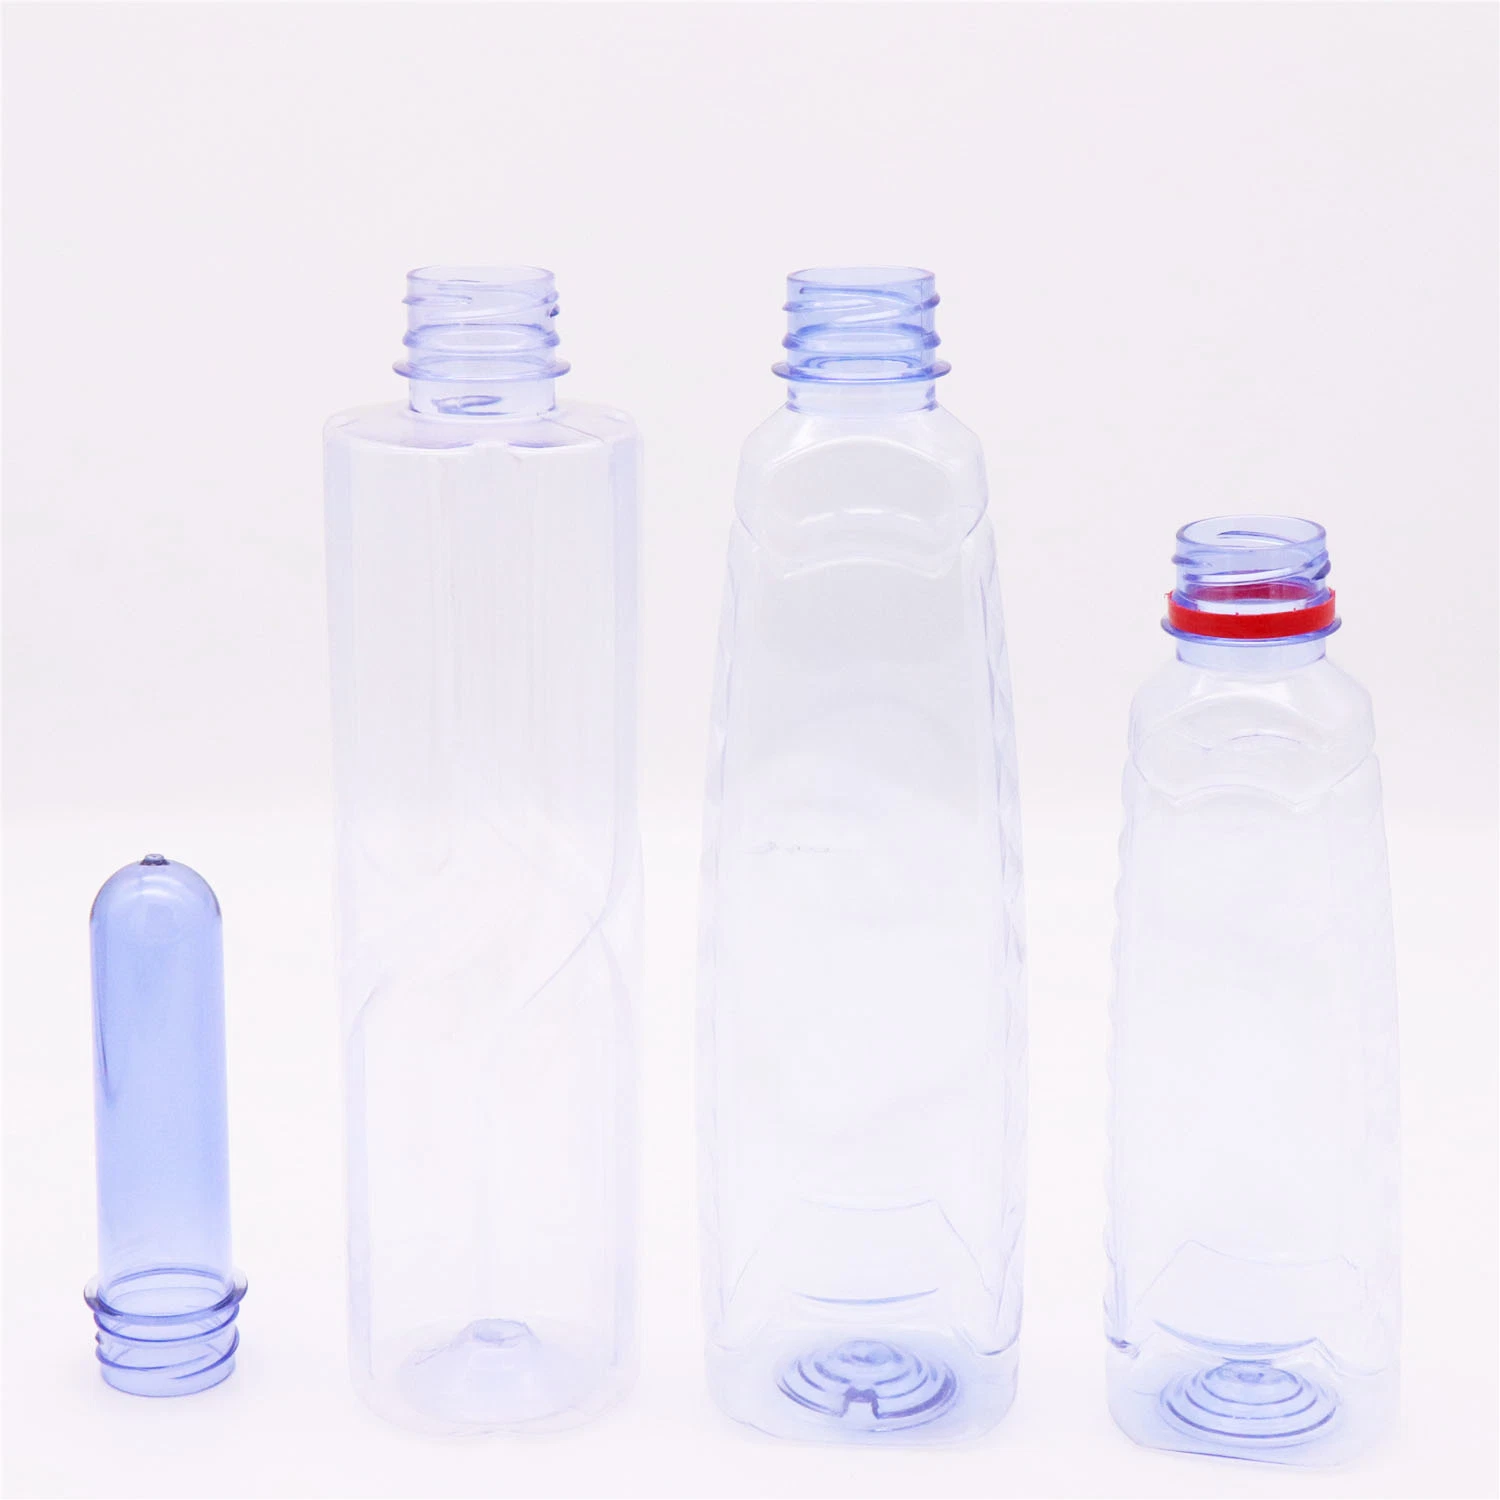 Pet pré-forma de plástico 24G Garrafa de água cosmética pré-forma de garrafa de suco pré-forma de garrafa de animal de estimação pré-forma personalizada pré-forma de garrafa de óleo pré-forma de garrafa de animal de estimação para garrafa de 5 galões.